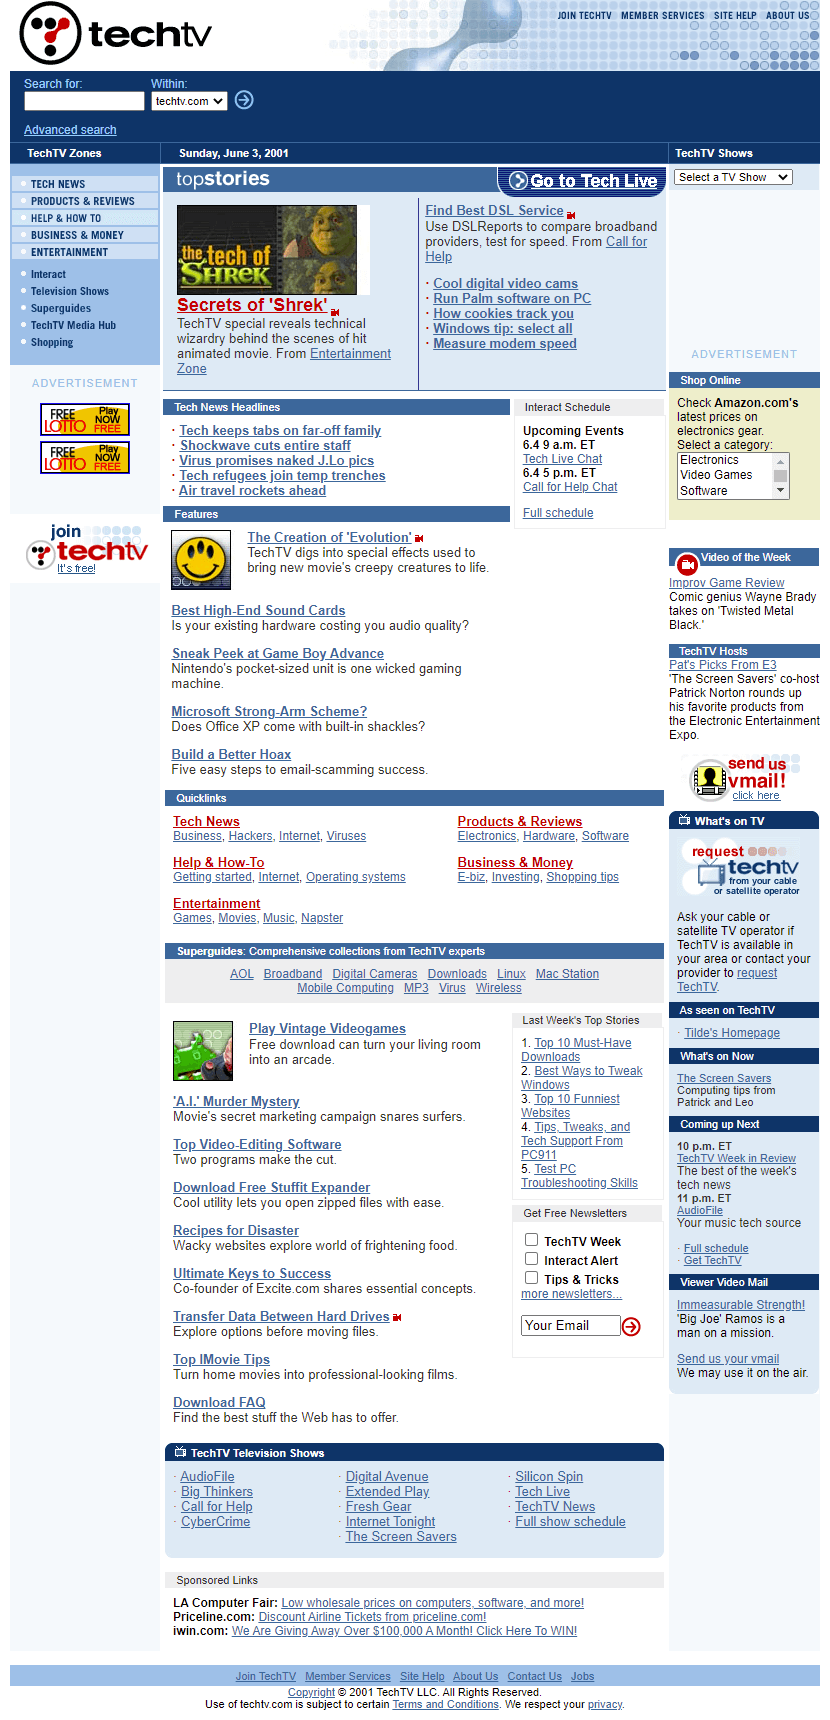 TechTV website in 2001